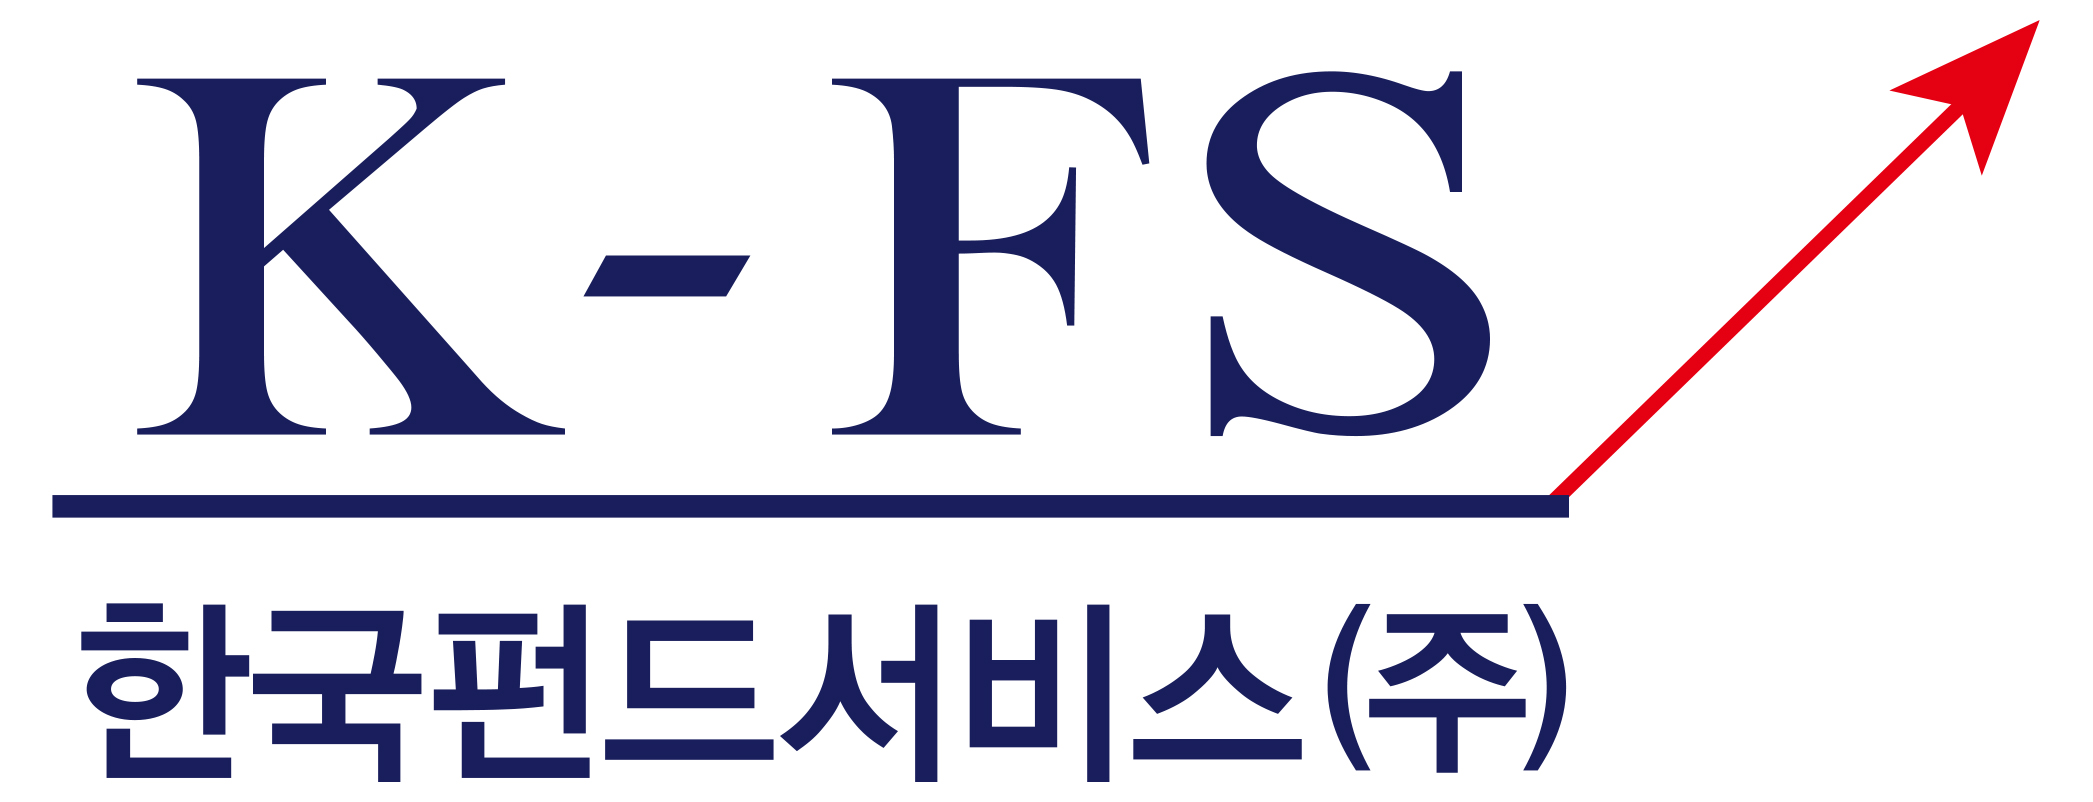 한국펀드서비스(주)의 기업로고